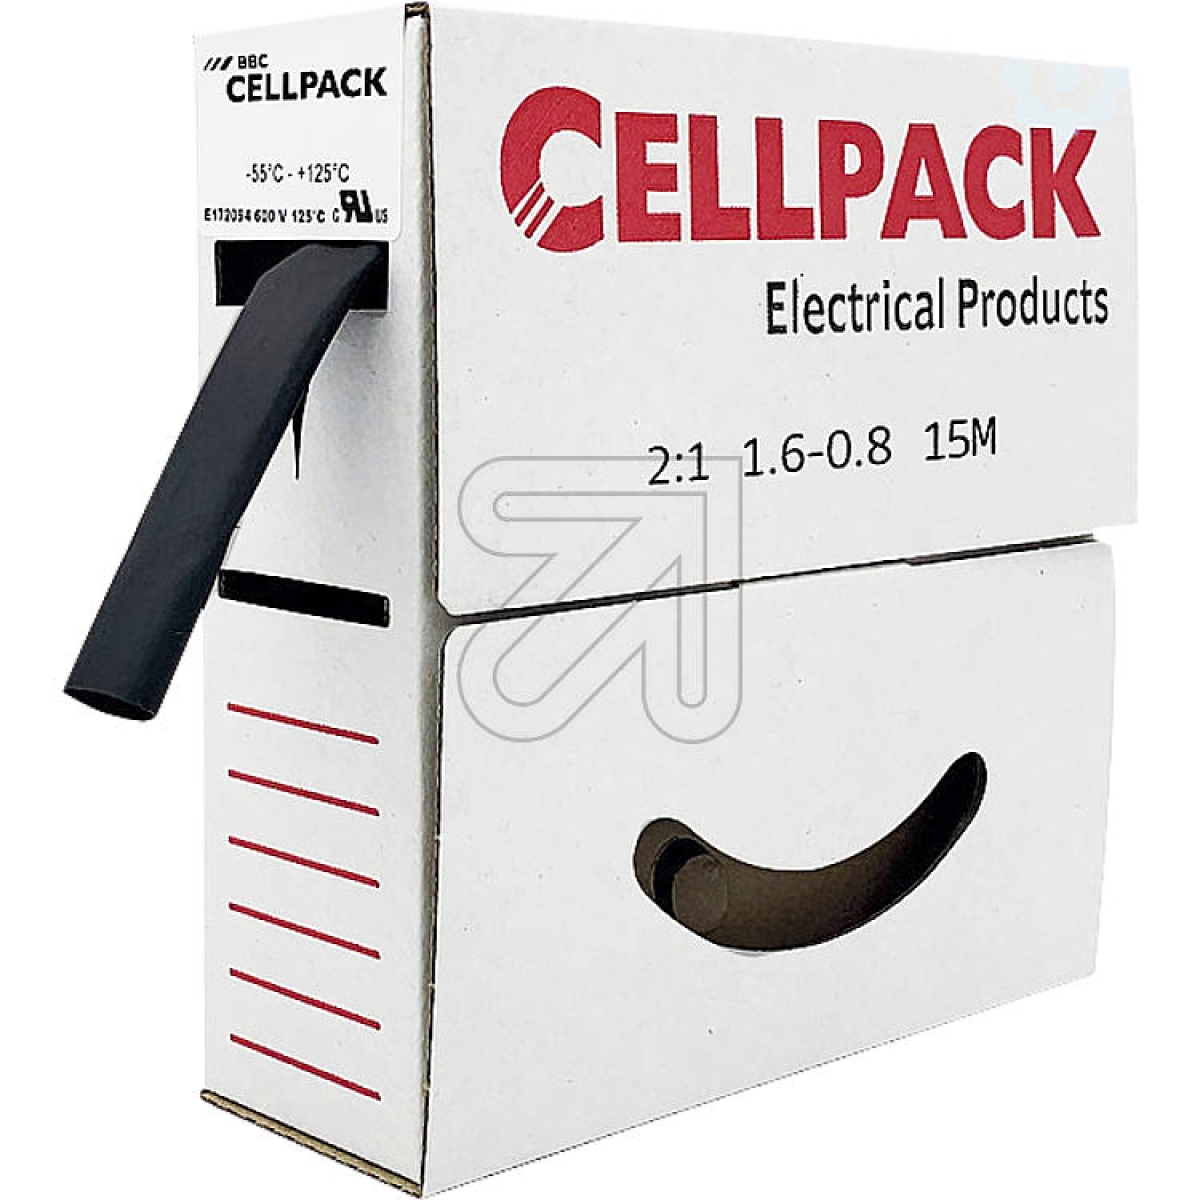 CellpackShrink tube 1.6-0.8, content 15mArticle-No: 724290